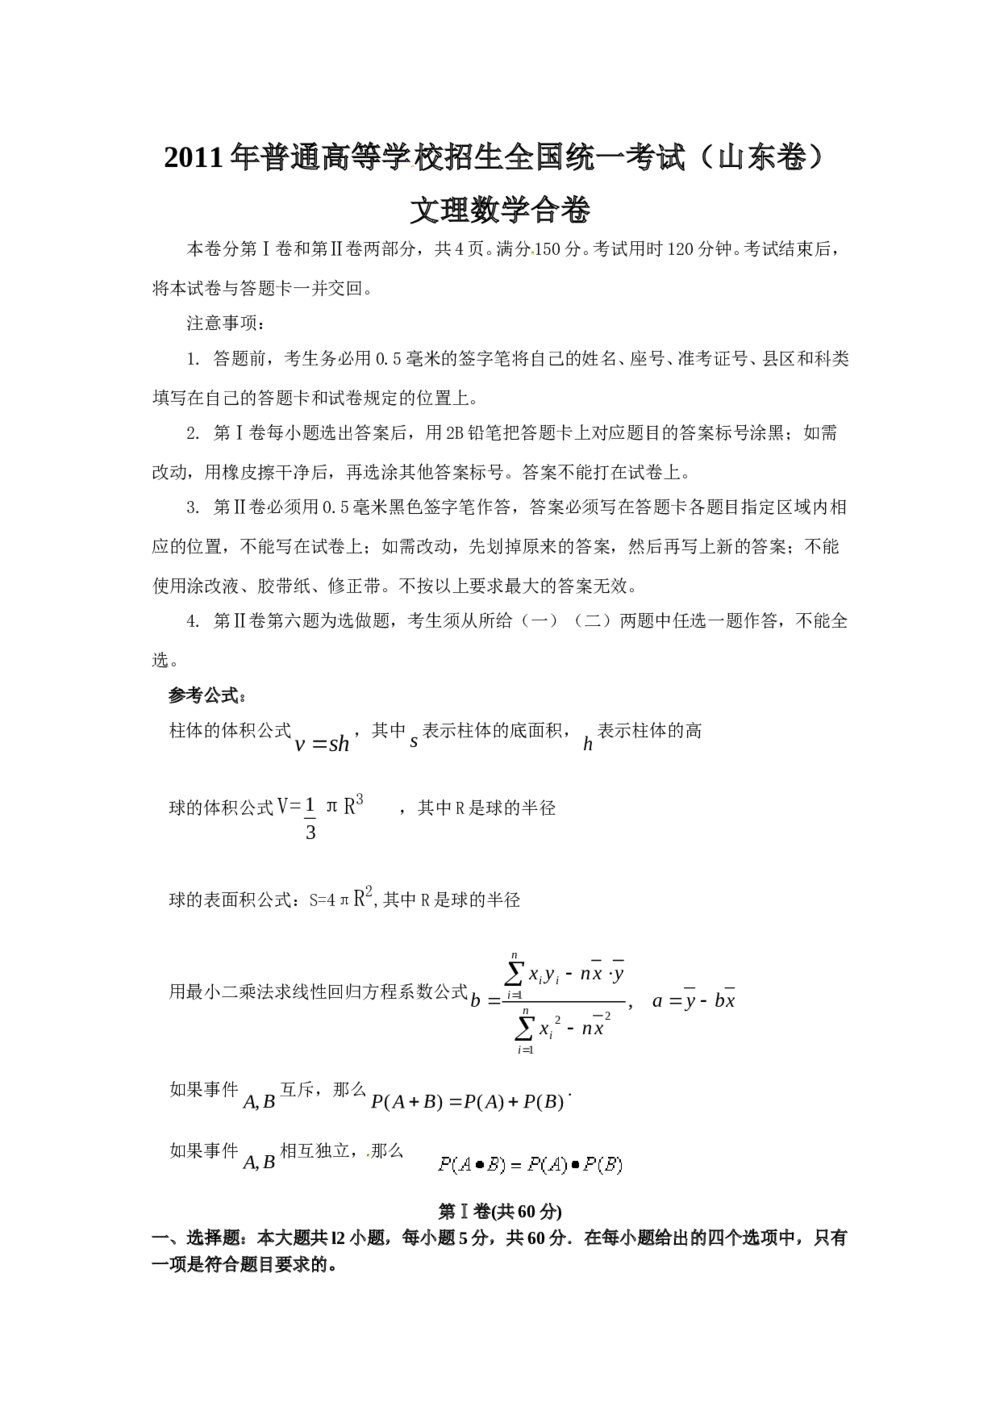 2011山东省高考(理科)数学试卷